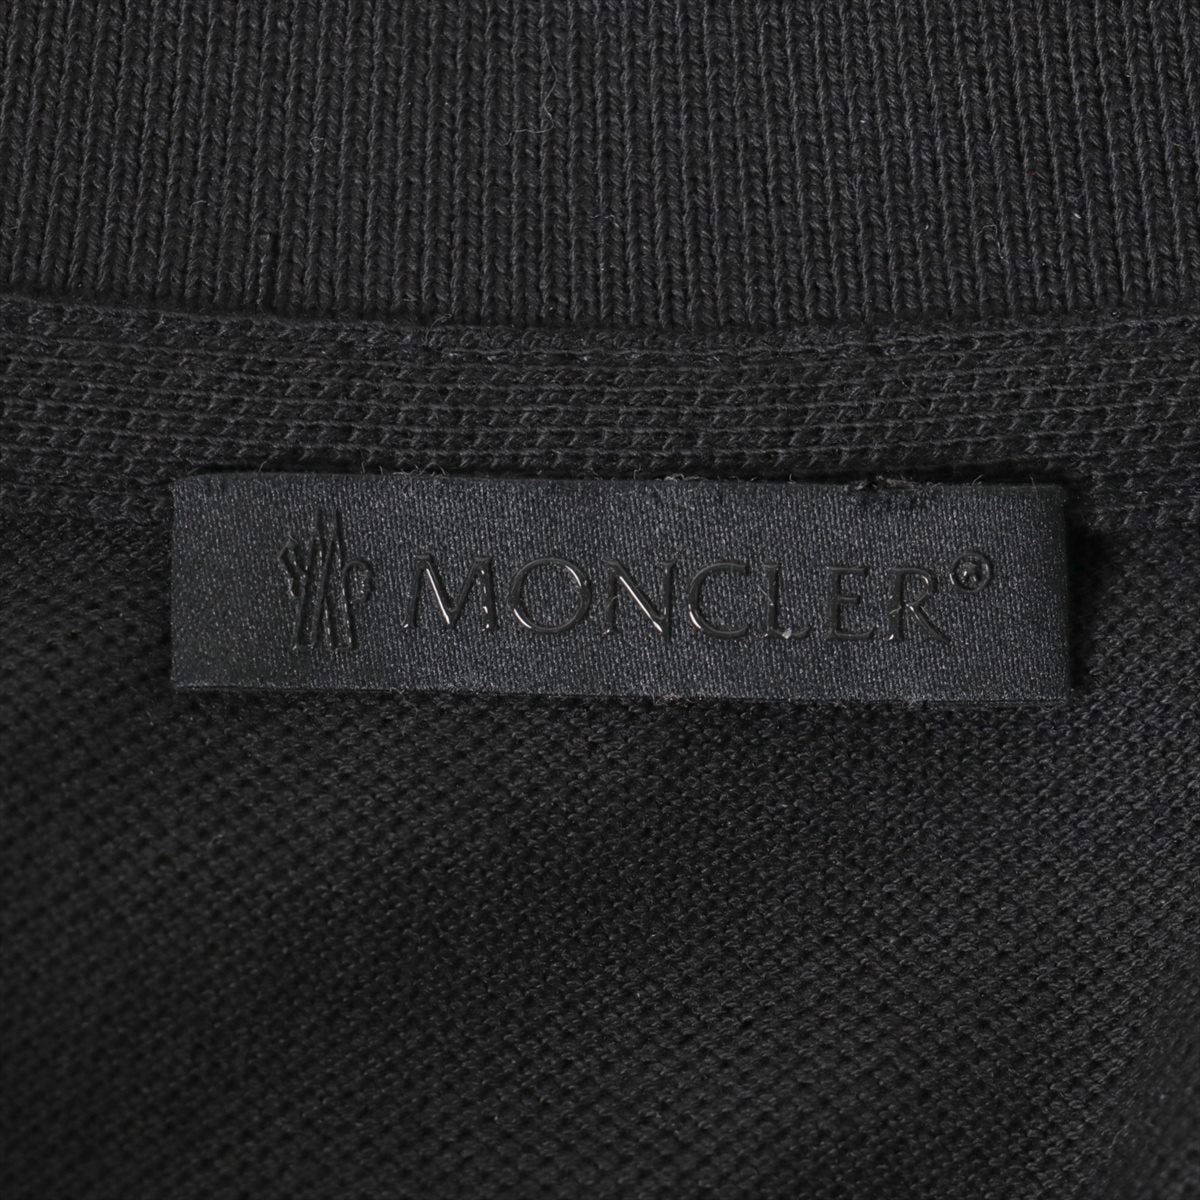 Moncler 20 years Cotton Polo shirt M Men's Black